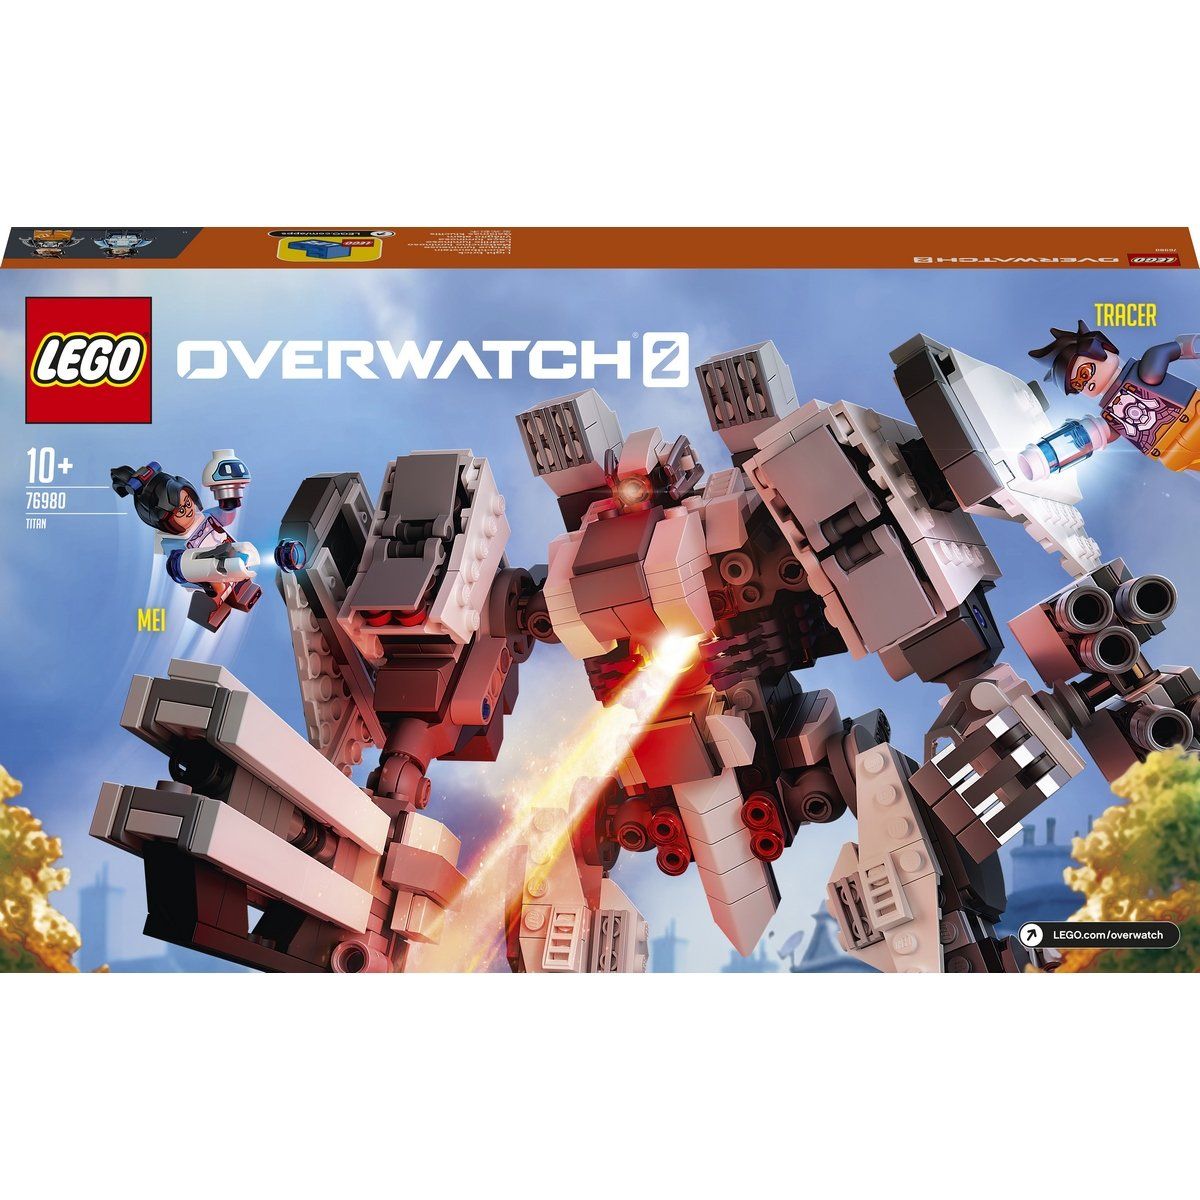 LEGO Overwatch 76980 Null Sector Omnic Titan LEGO_76980-box02.jpg